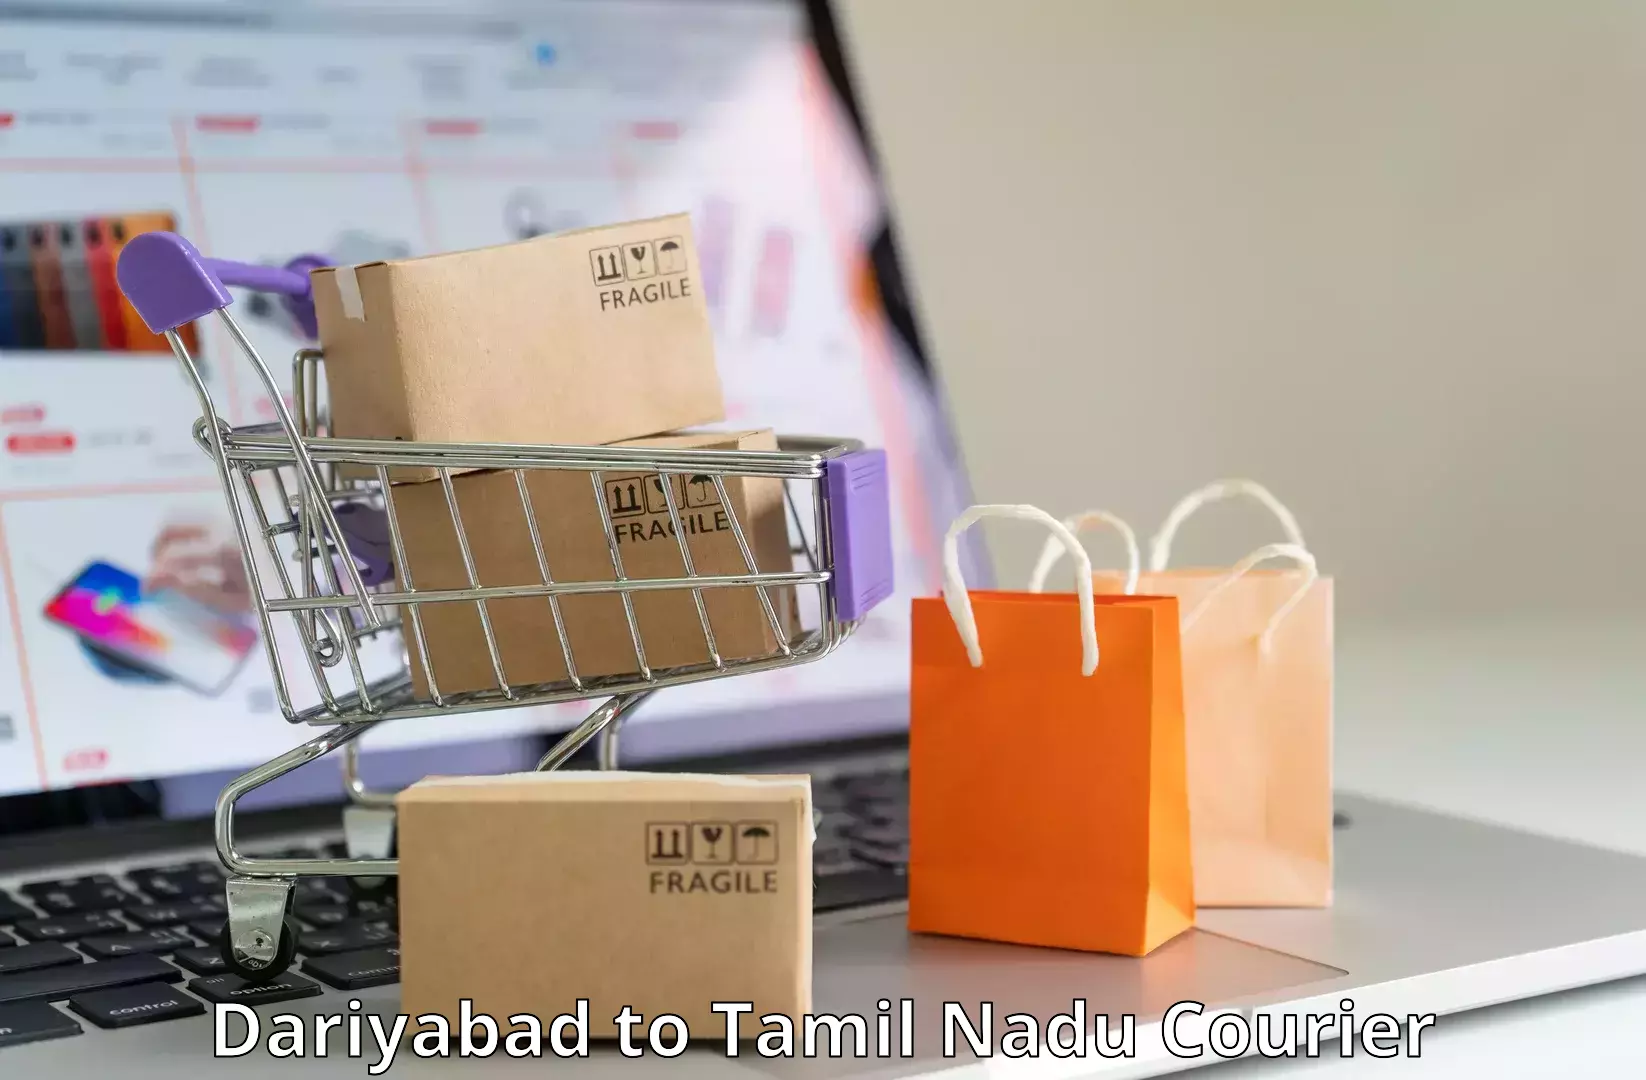 Efficient logistics management Dariyabad to Thiruvadanai